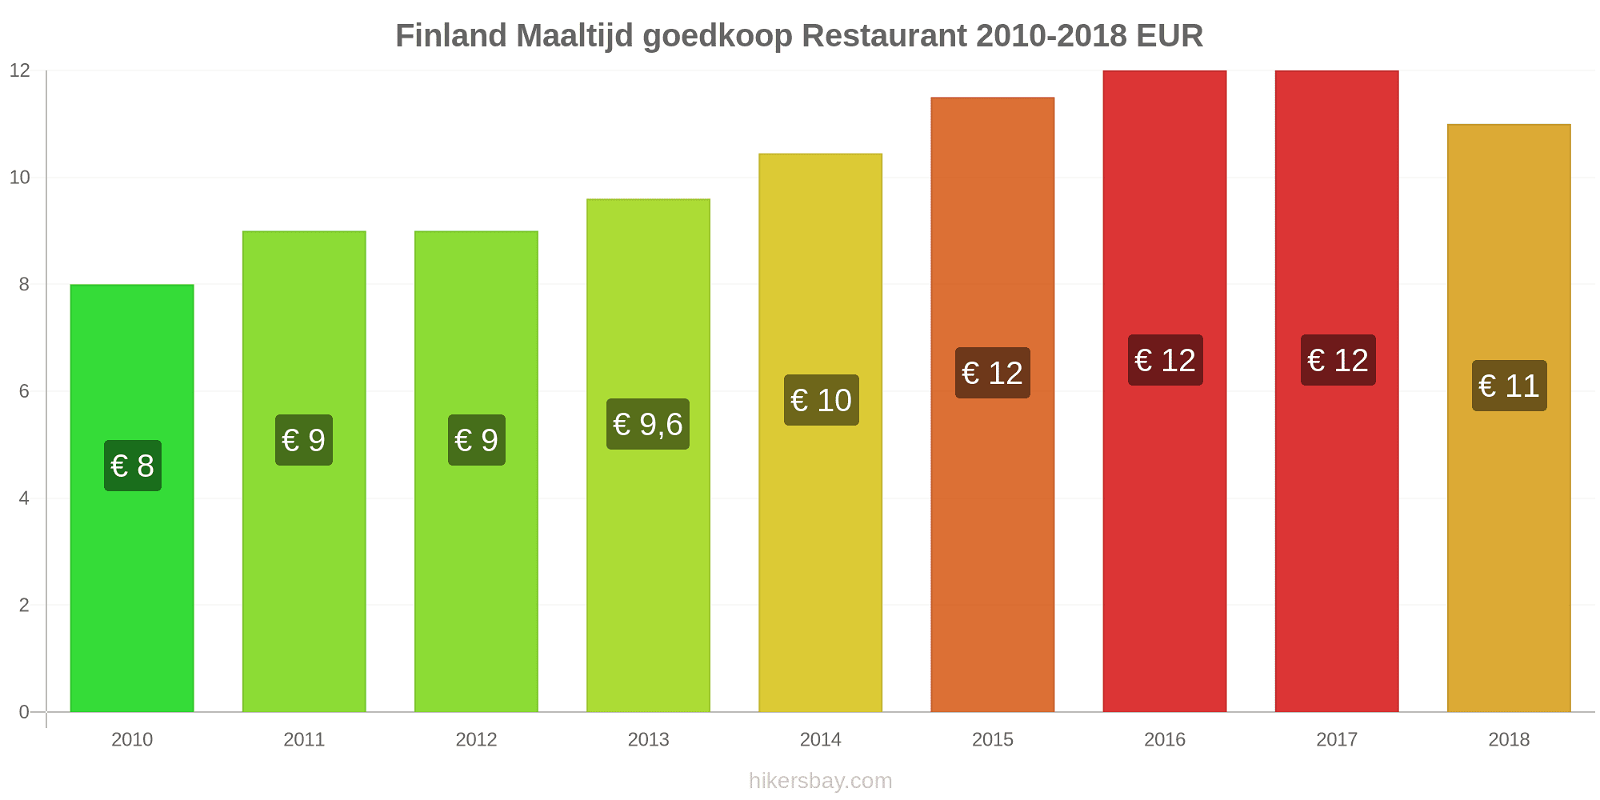 Finland prijswijzigingen Maaltijd in een goedkoop restaurant hikersbay.com